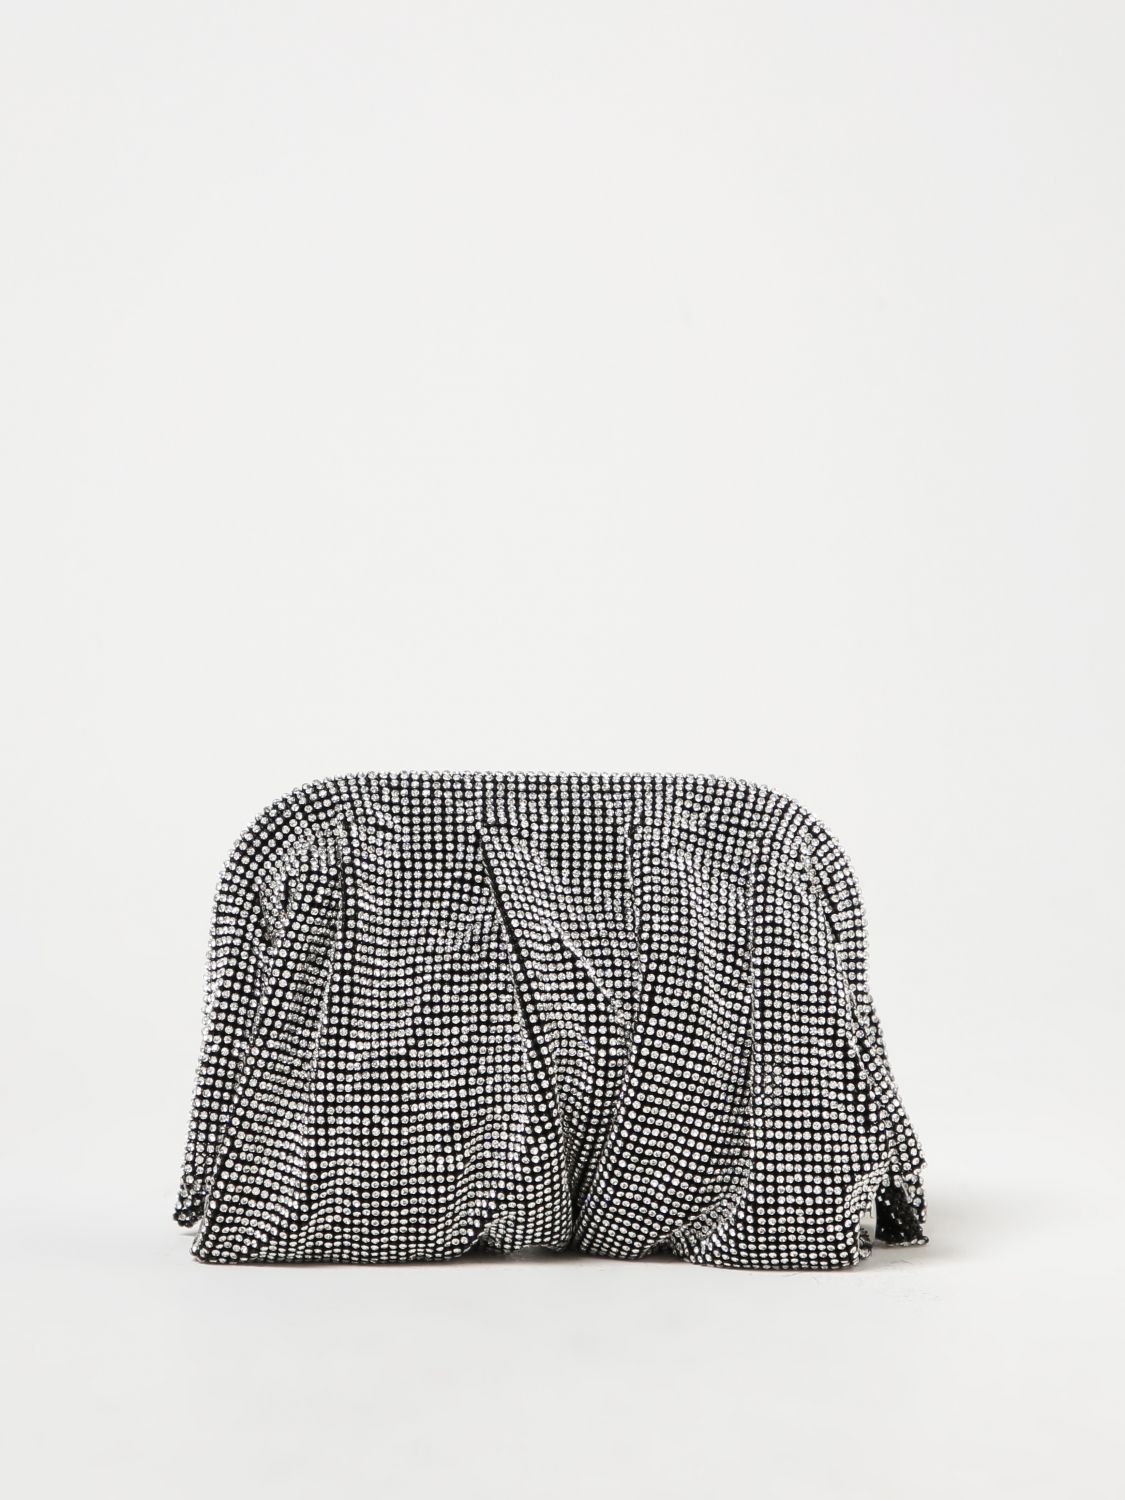 Benedetta Bruzziches Mini Bag  Woman In Grey